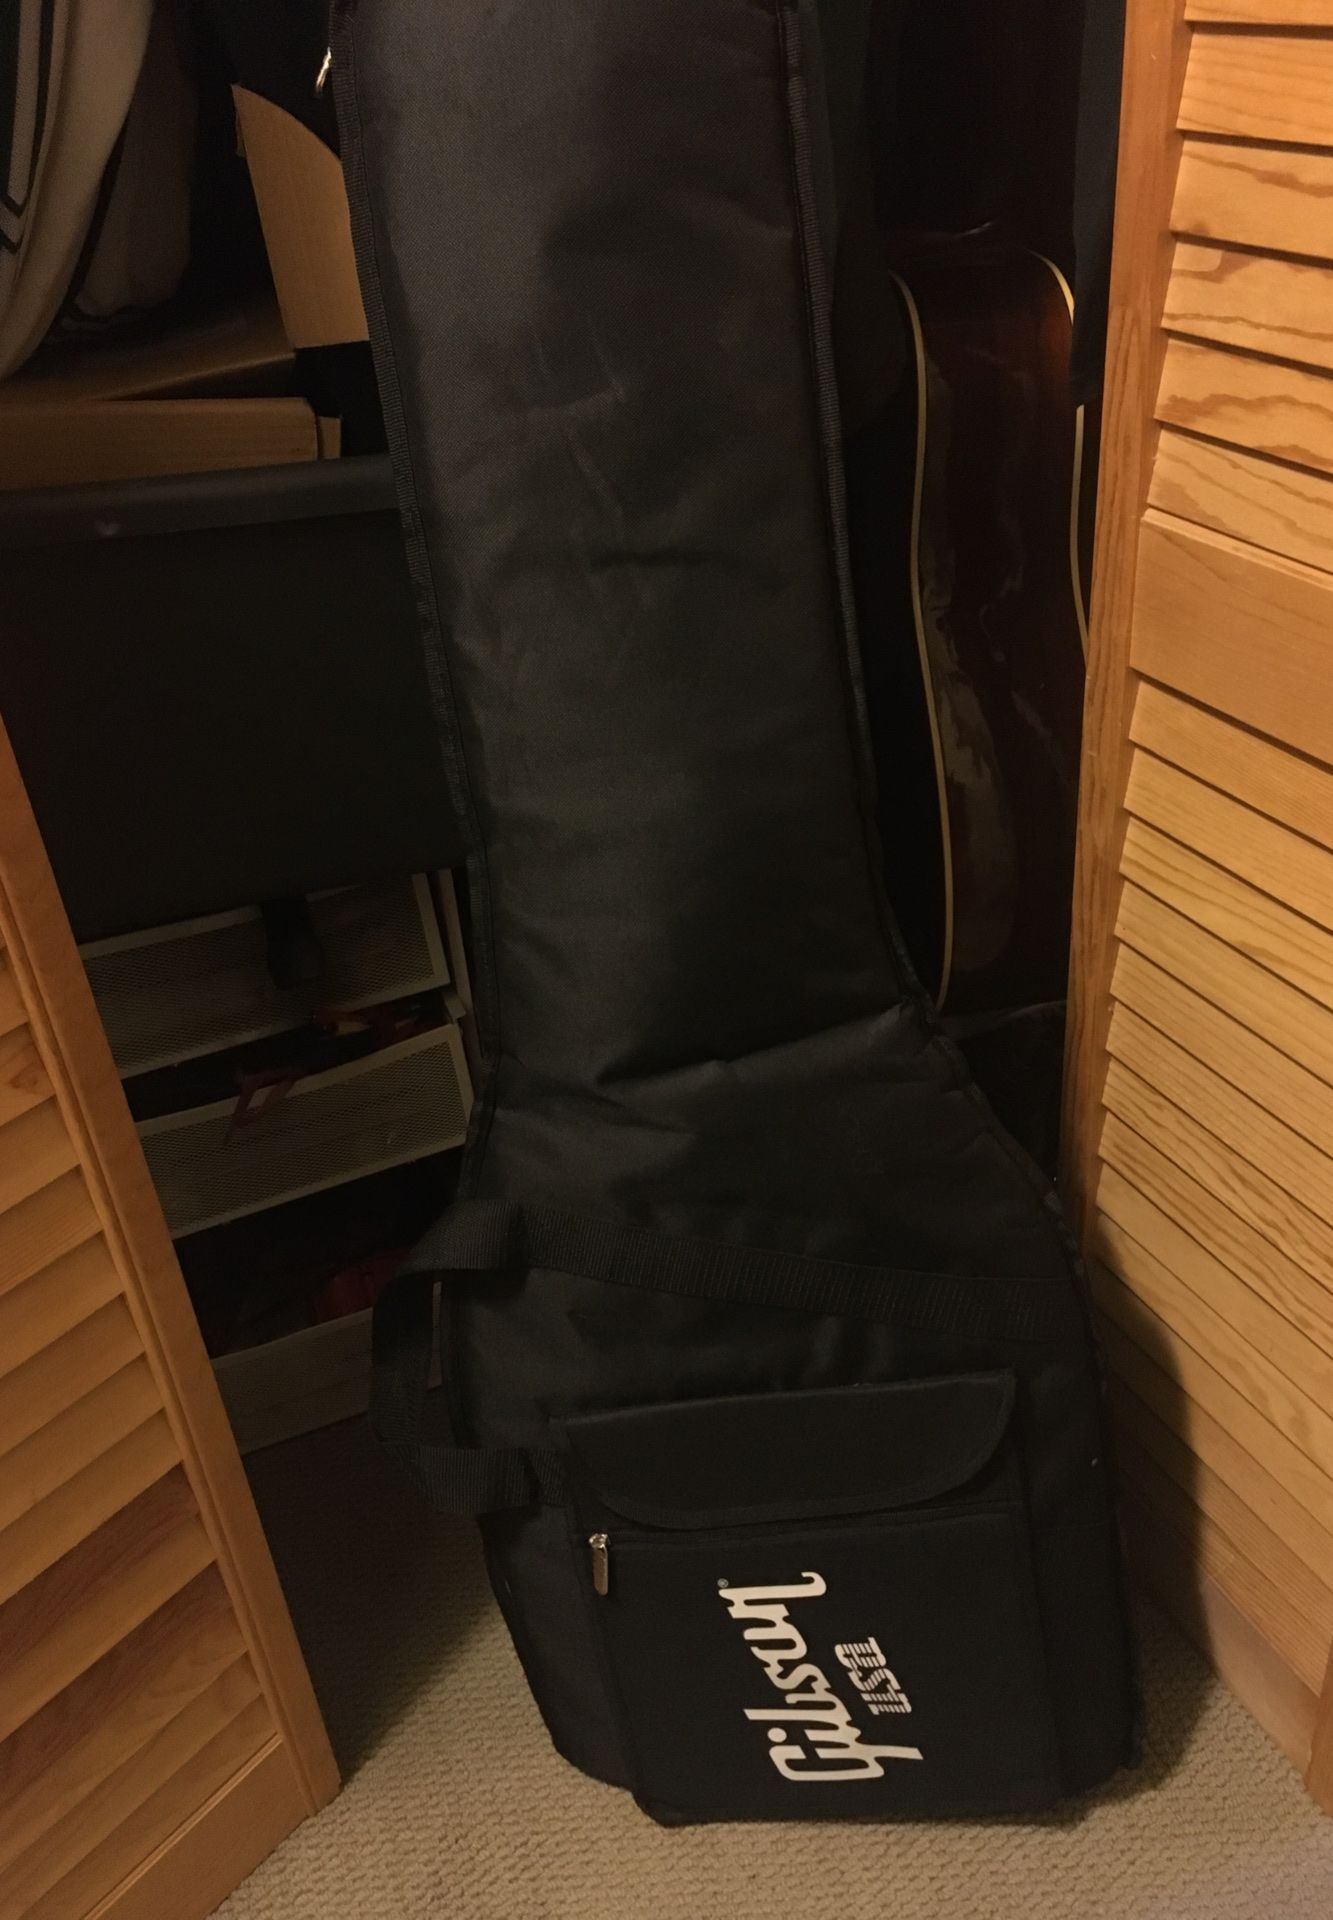 Gibson SG guitar gig bag - Brand New